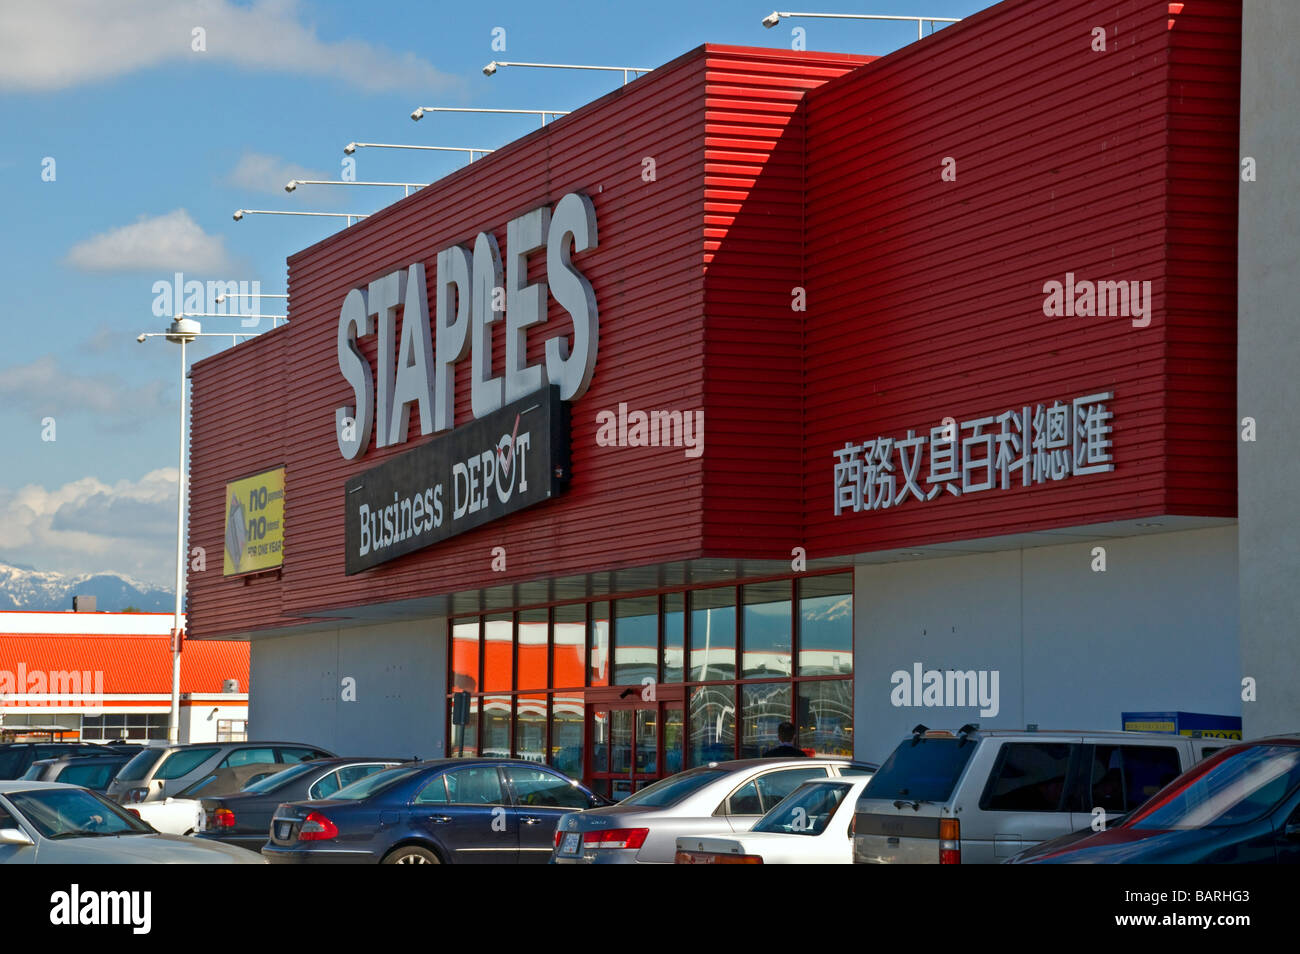 Staples store avec l'écriture chinoise sur la façade Banque D'Images